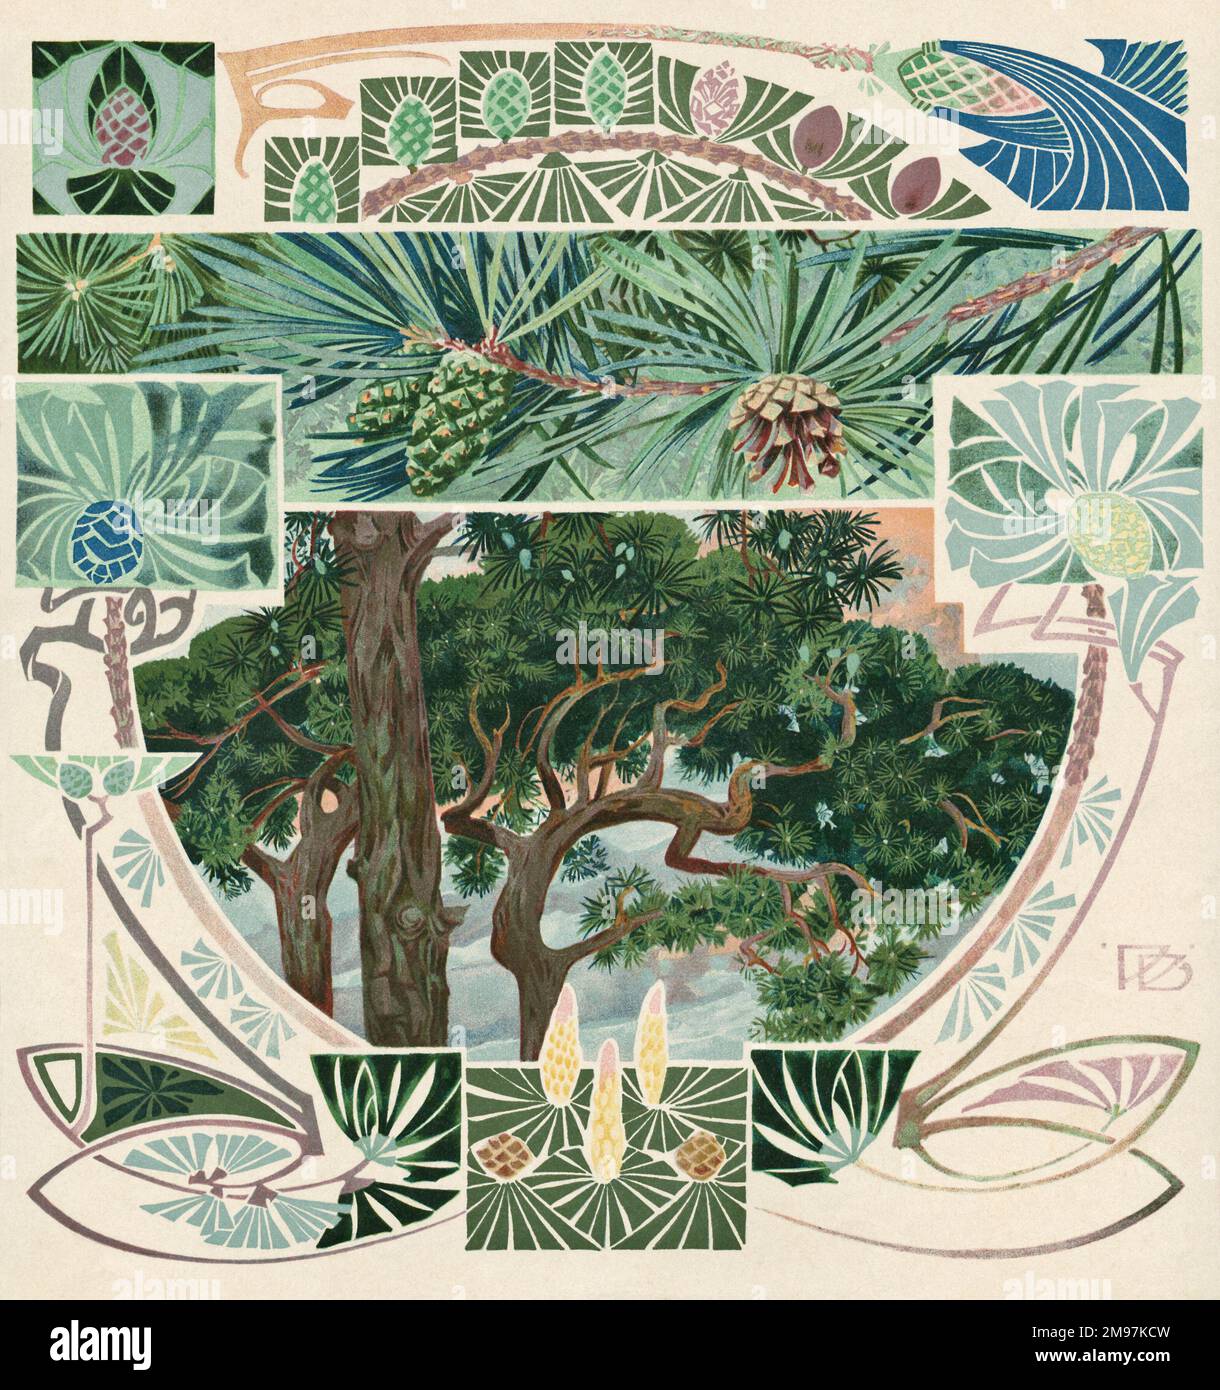 Assemblage multicolore de dessins d'arbres art nouveau et de cônes de pin, avec une image plus représentative des arbres au centre. Banque D'Images